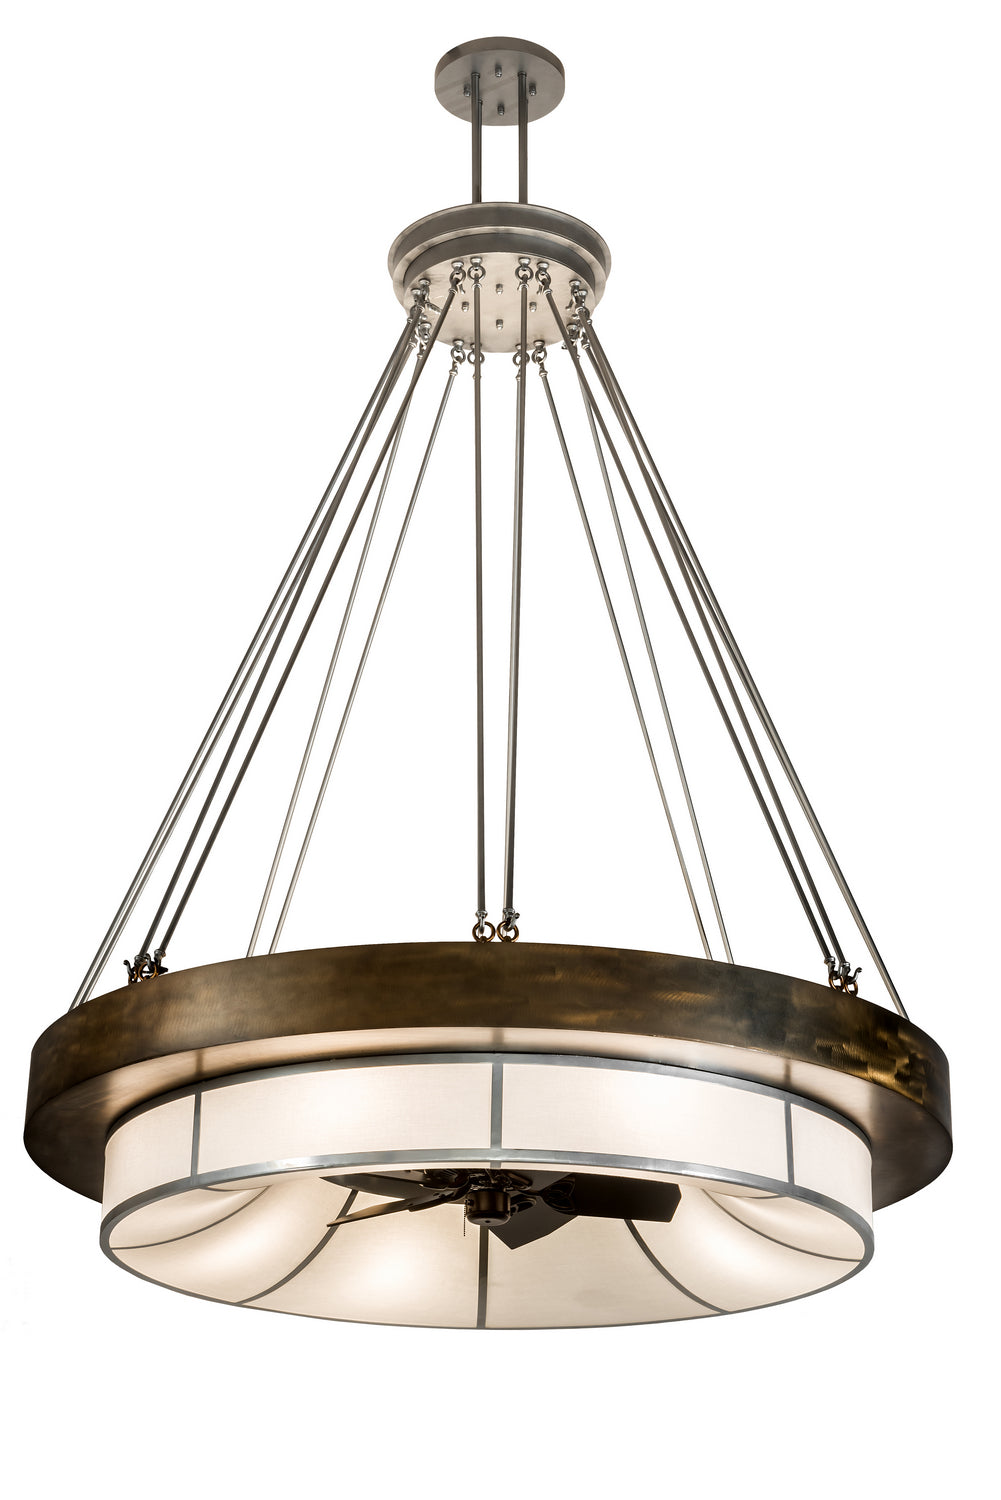 Meyda Tiffany Cilindro 192958 Ceiling Fan - Antique Copper